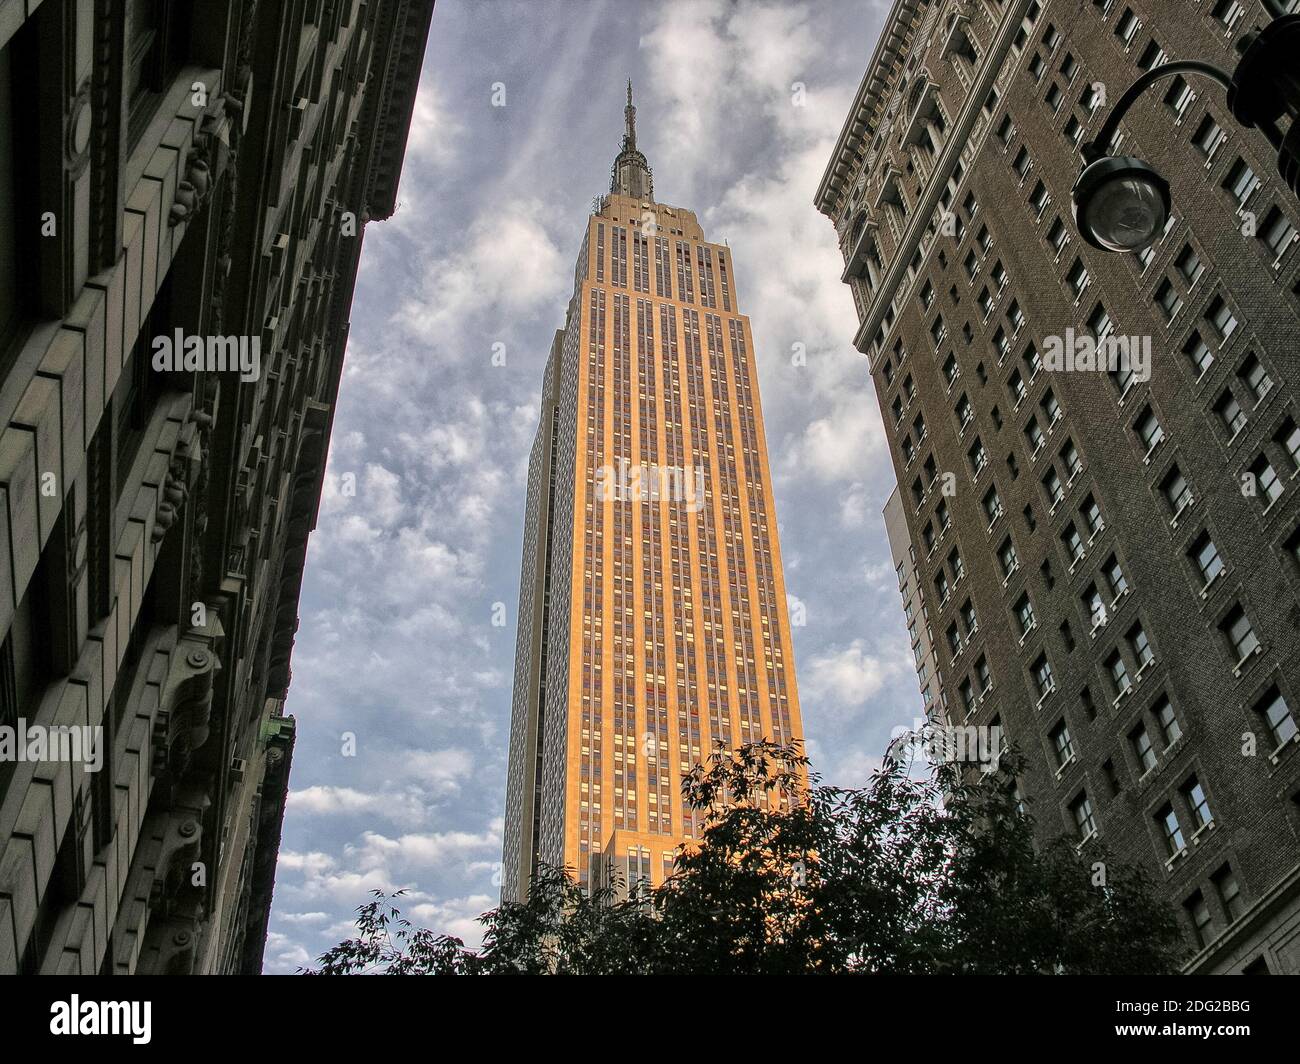 NEW YORK CITY - AOÛT 16 : l'Empire State Building le 16 août 2008 à New York, États-Unis. L'Empire State Building est un bâtiment de 102 étages Banque D'Images